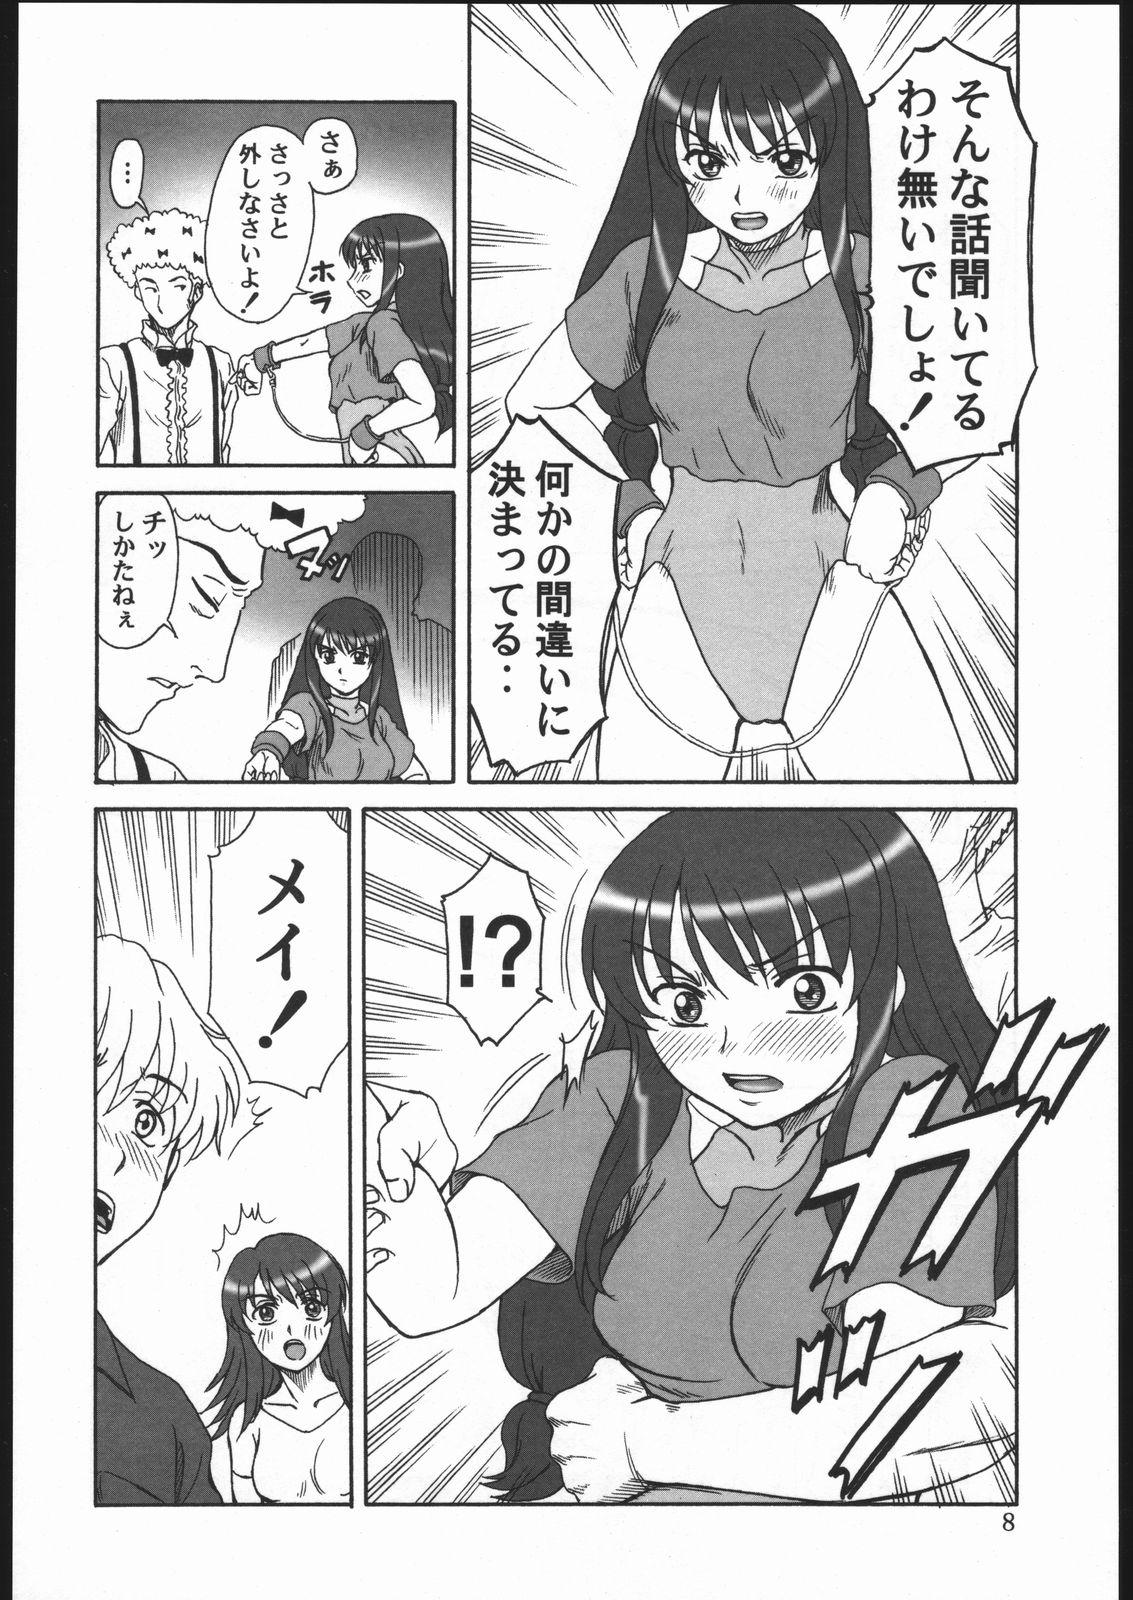 Prostitute Gyokusai Kakugo 6 Kamikaze Attack!! - Kaleido star Brother Sister - Page 7